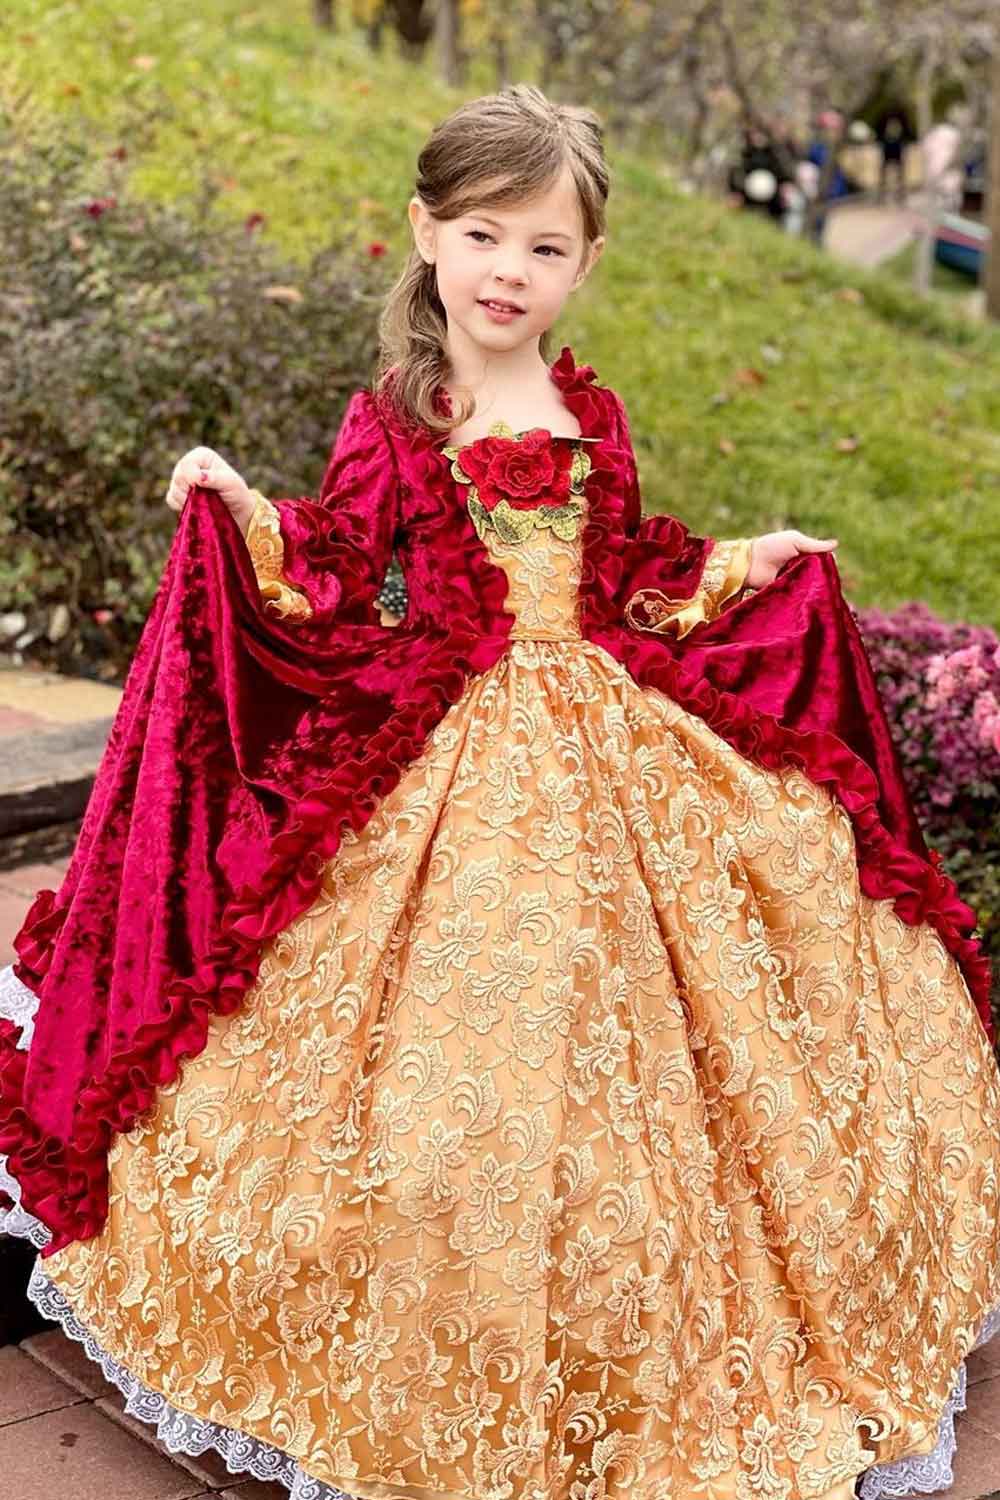 Belle Halloween Dress for Girls